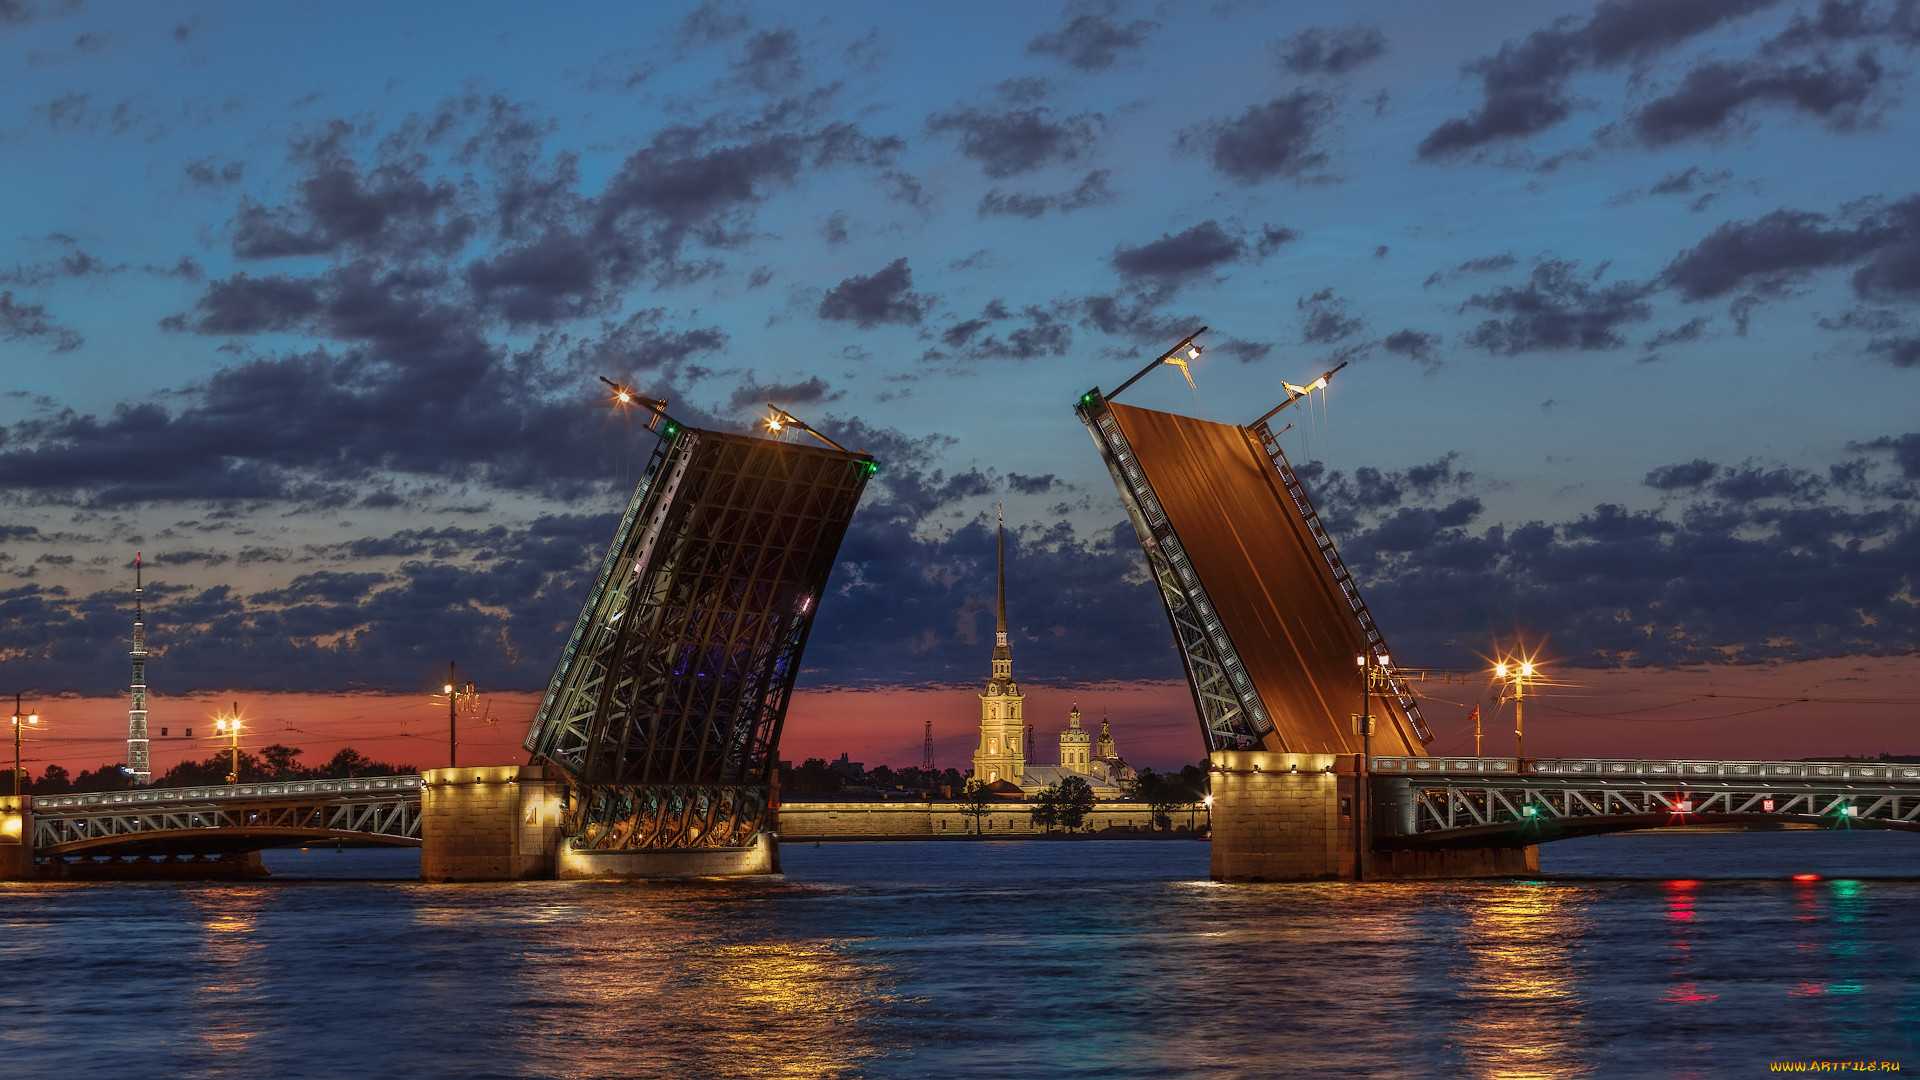 Дворцовый мост в санкт-петербурге: фото, краткое описание, история